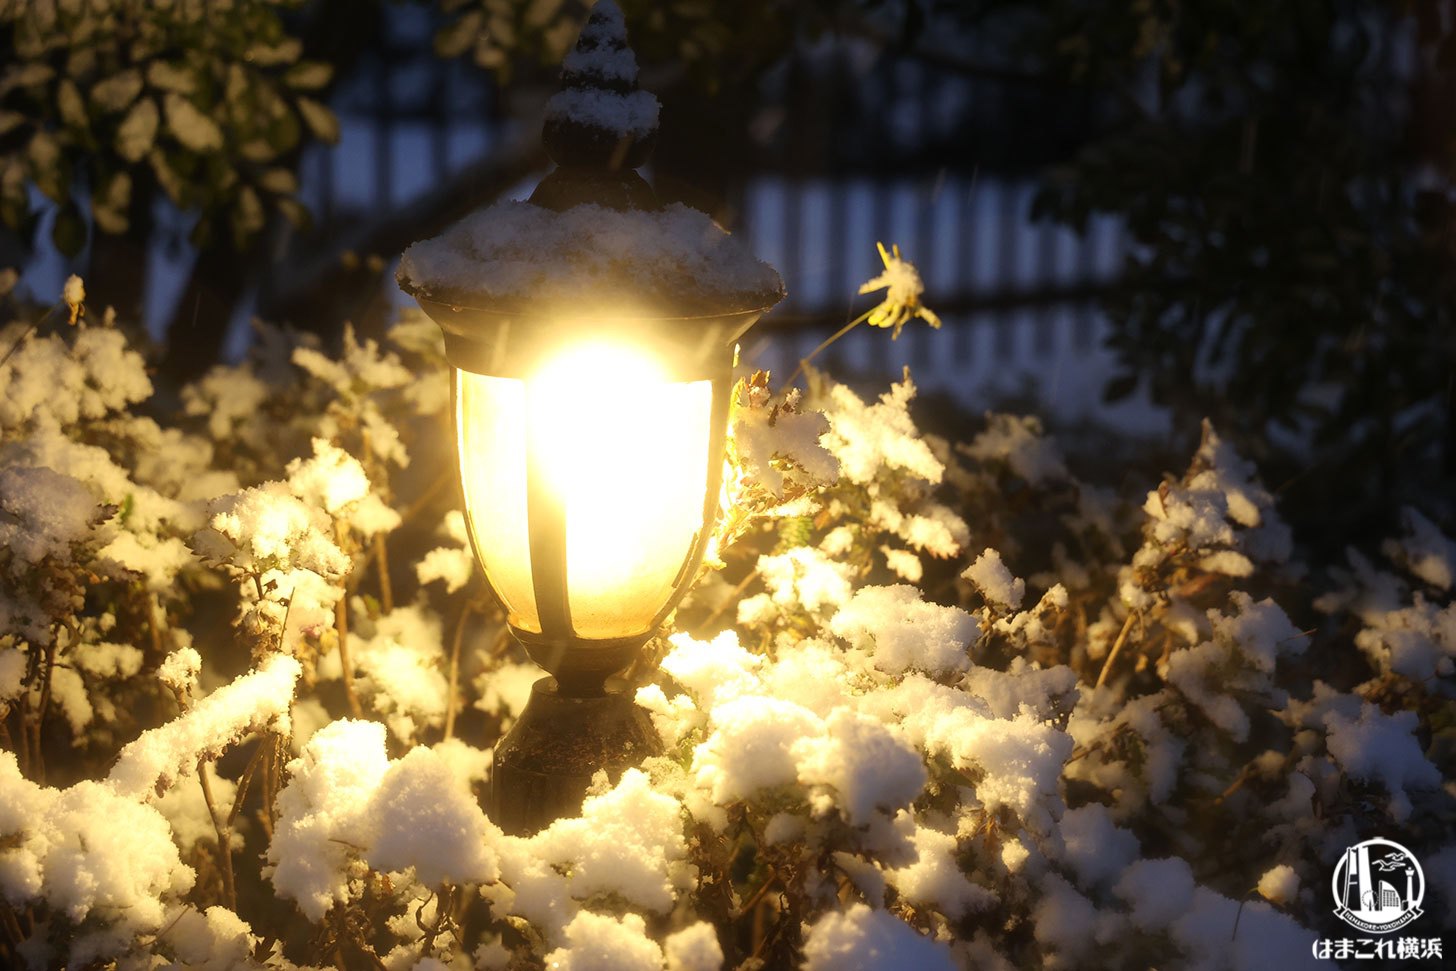 街灯のライトアップと雪景色